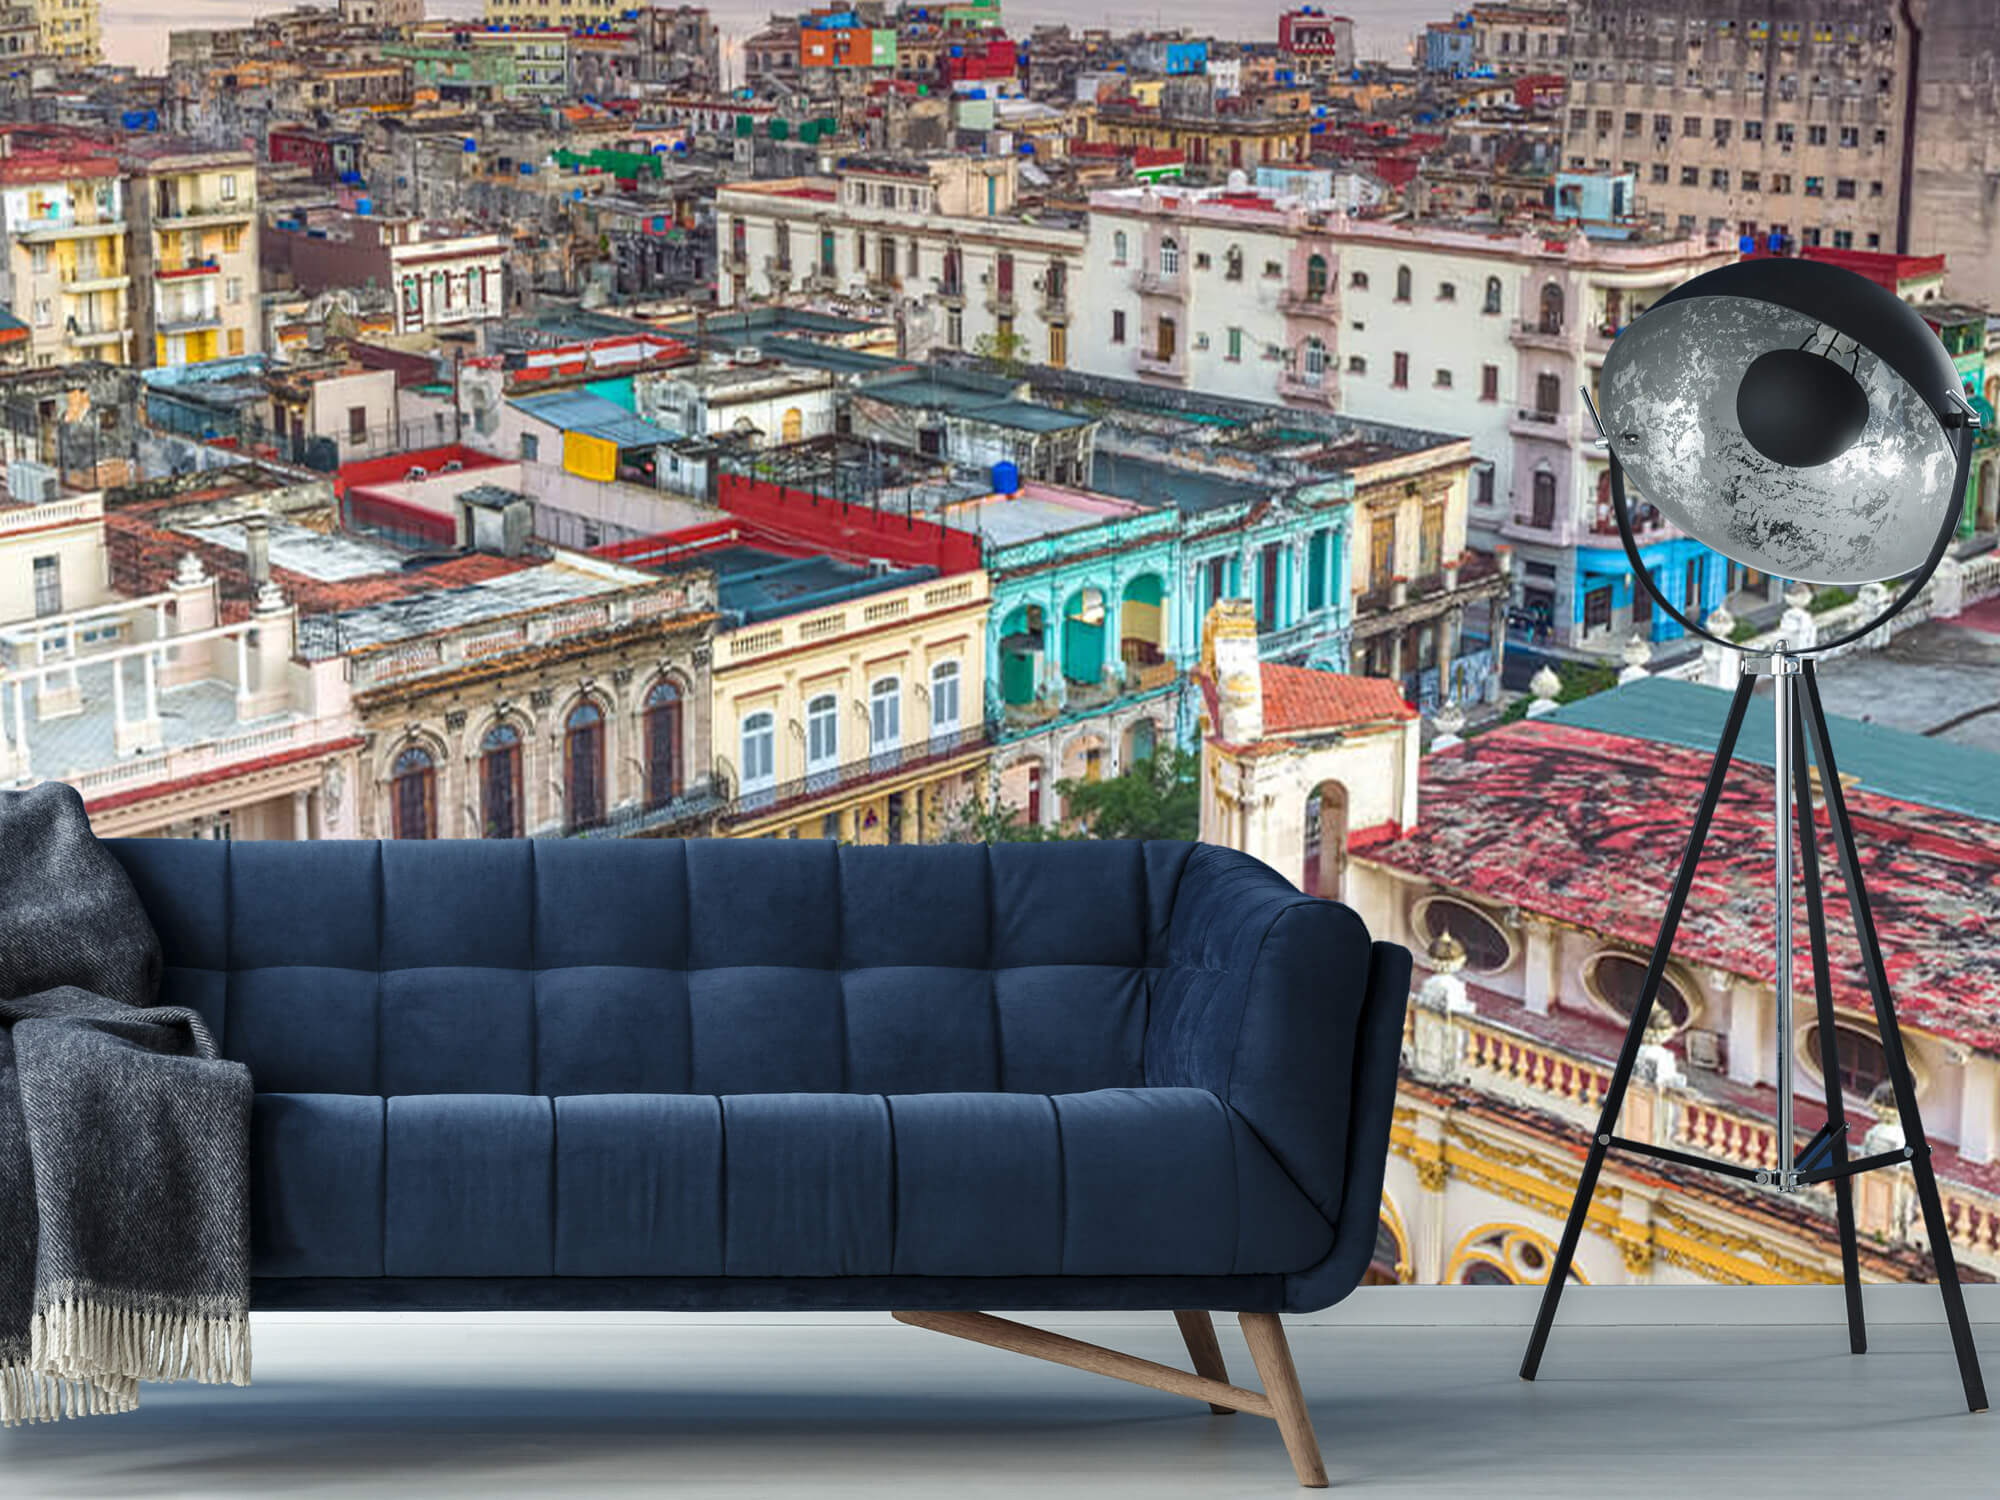  Papel pintado con La Habana desde arriba - Salón 5